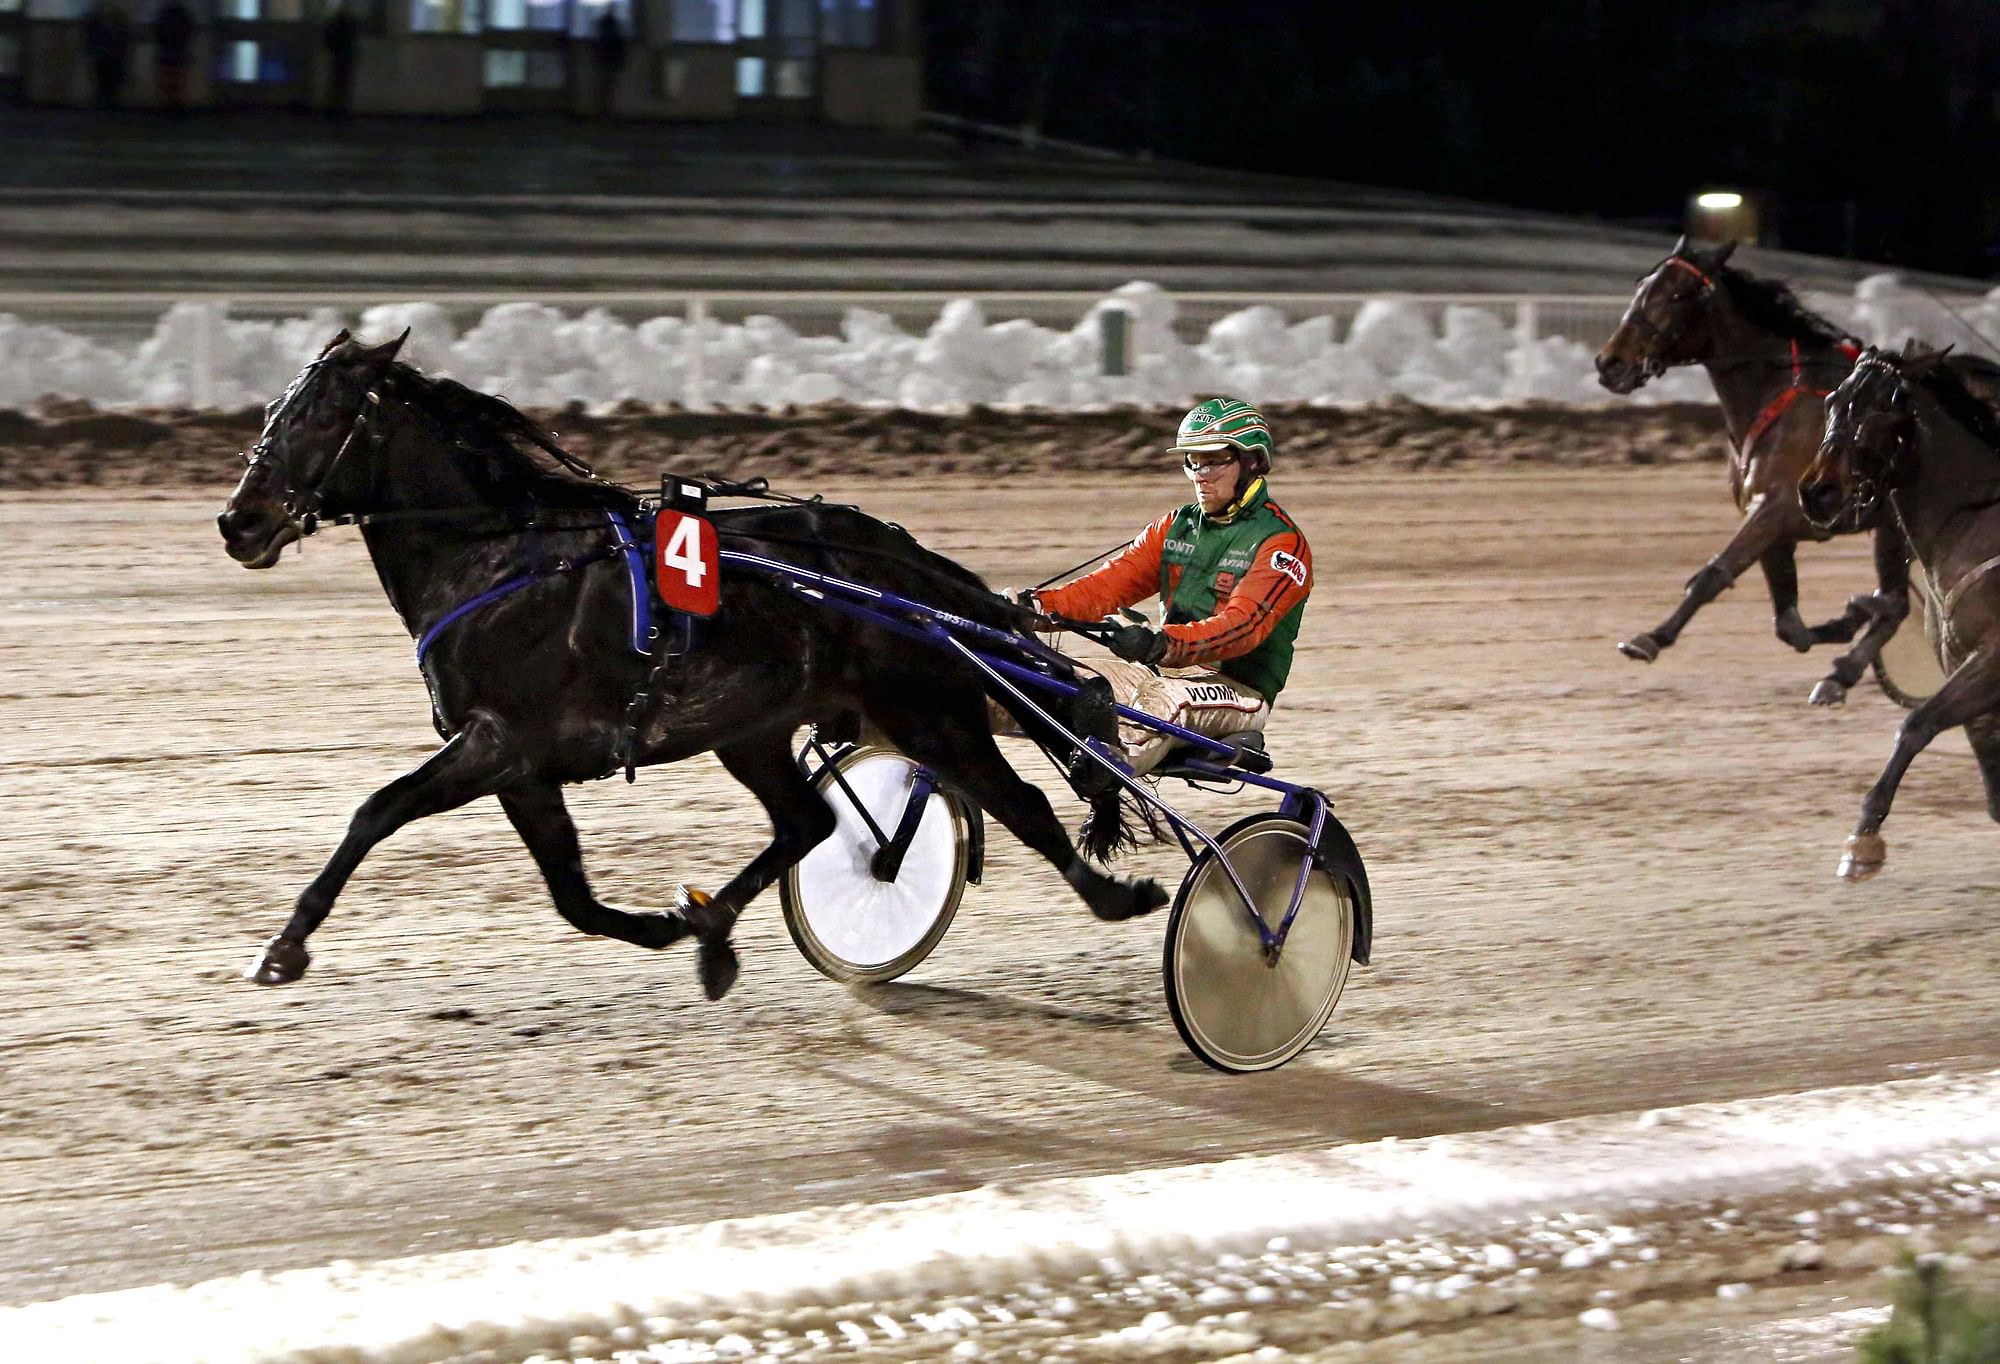 Atupem kuuluu nimekkäimpiin hevosiin, jotka on asetettu osittaiseen kilpailukieltoon koskien Suomessa syntyneiden lähtöjä. Kuva: Pekka Salonen.